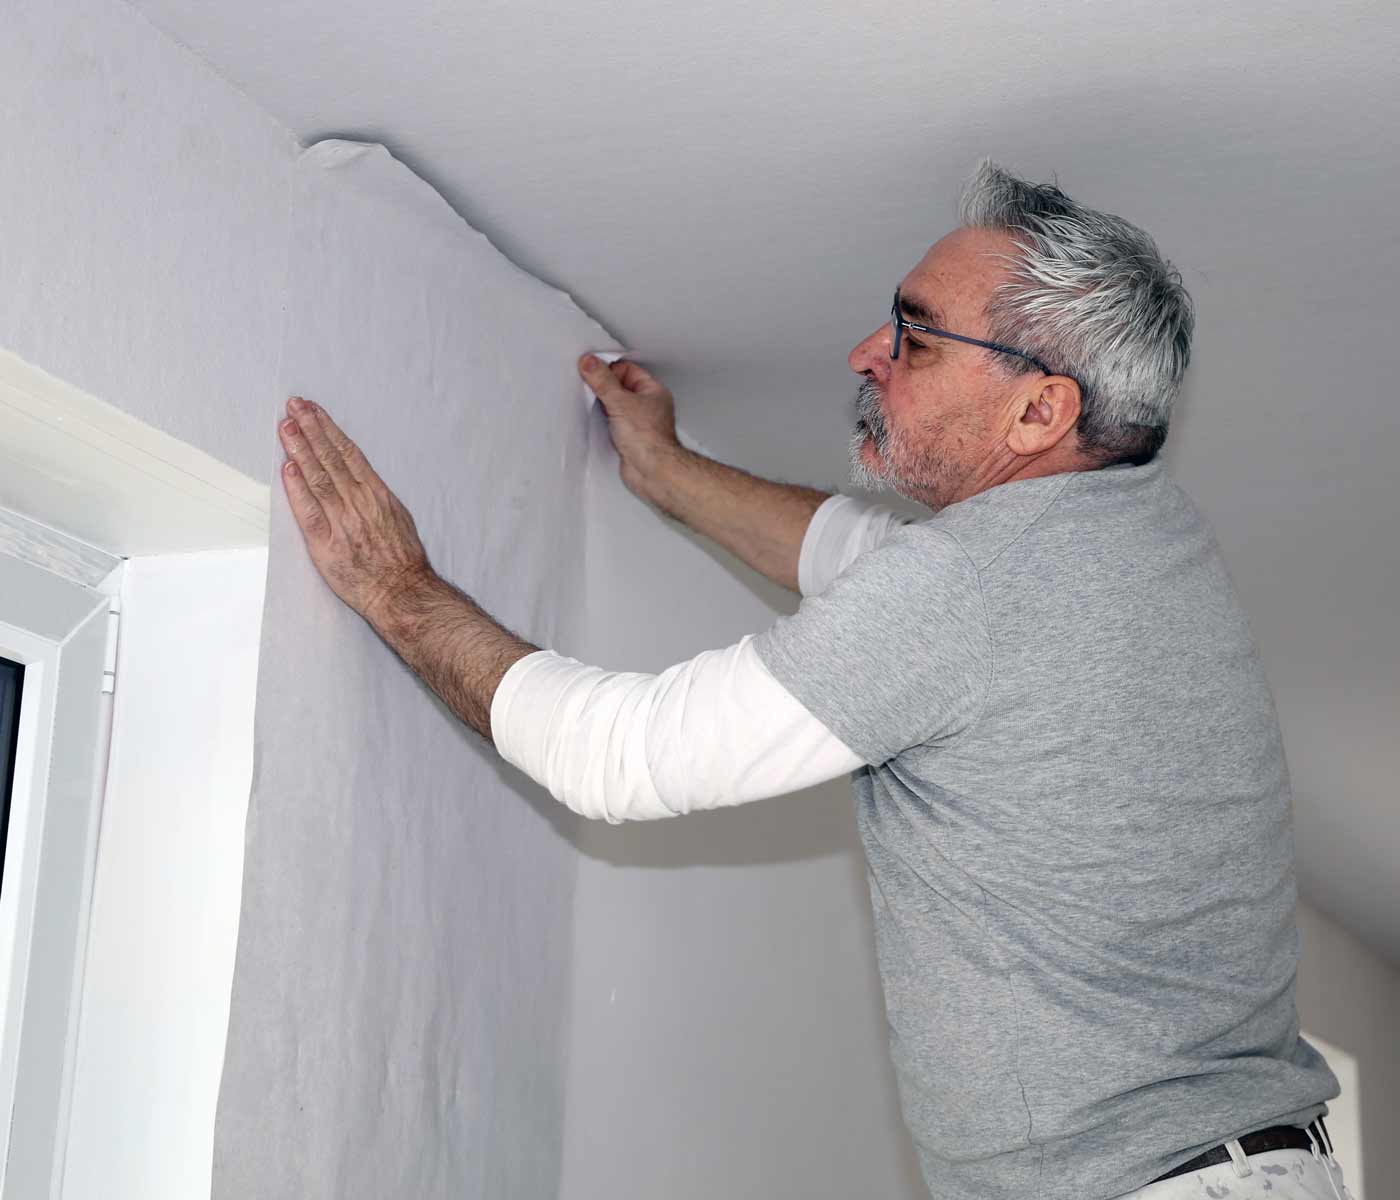 man matching pattern while installing wallpaper